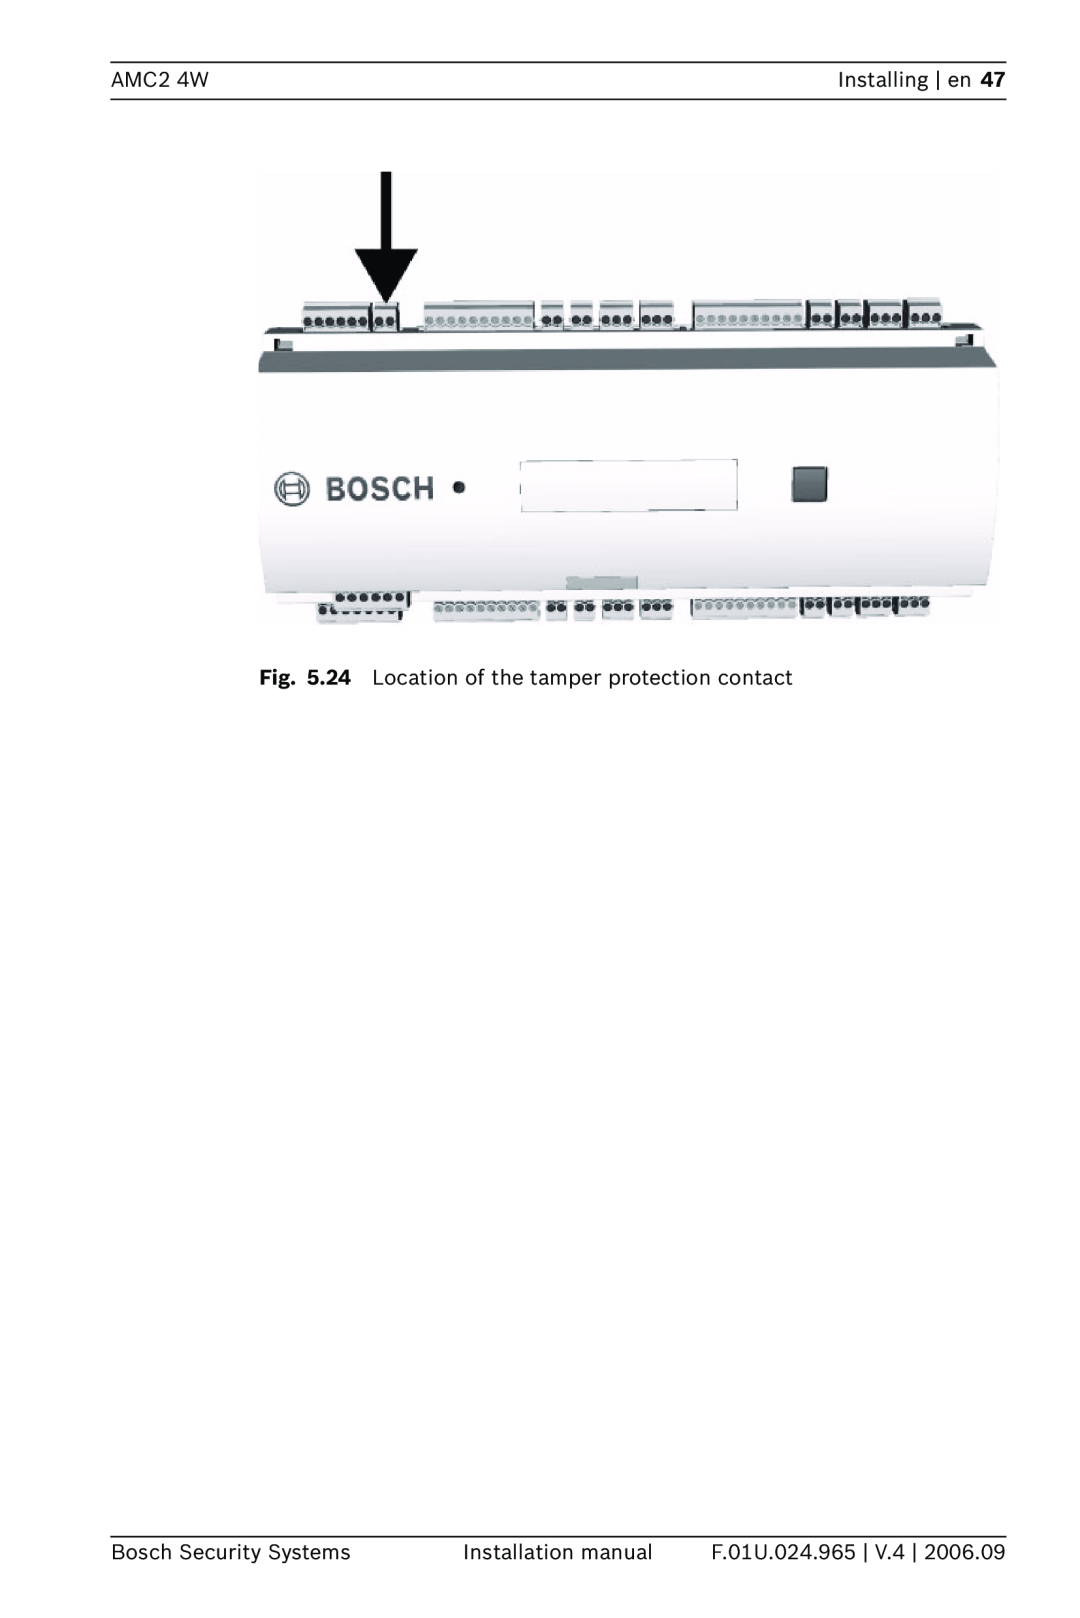 Bosch Appliances APC-AMC2-4W AMC2 4W, Installing en, Bosch Security Systems, Installation manual, F.01U.024.965 